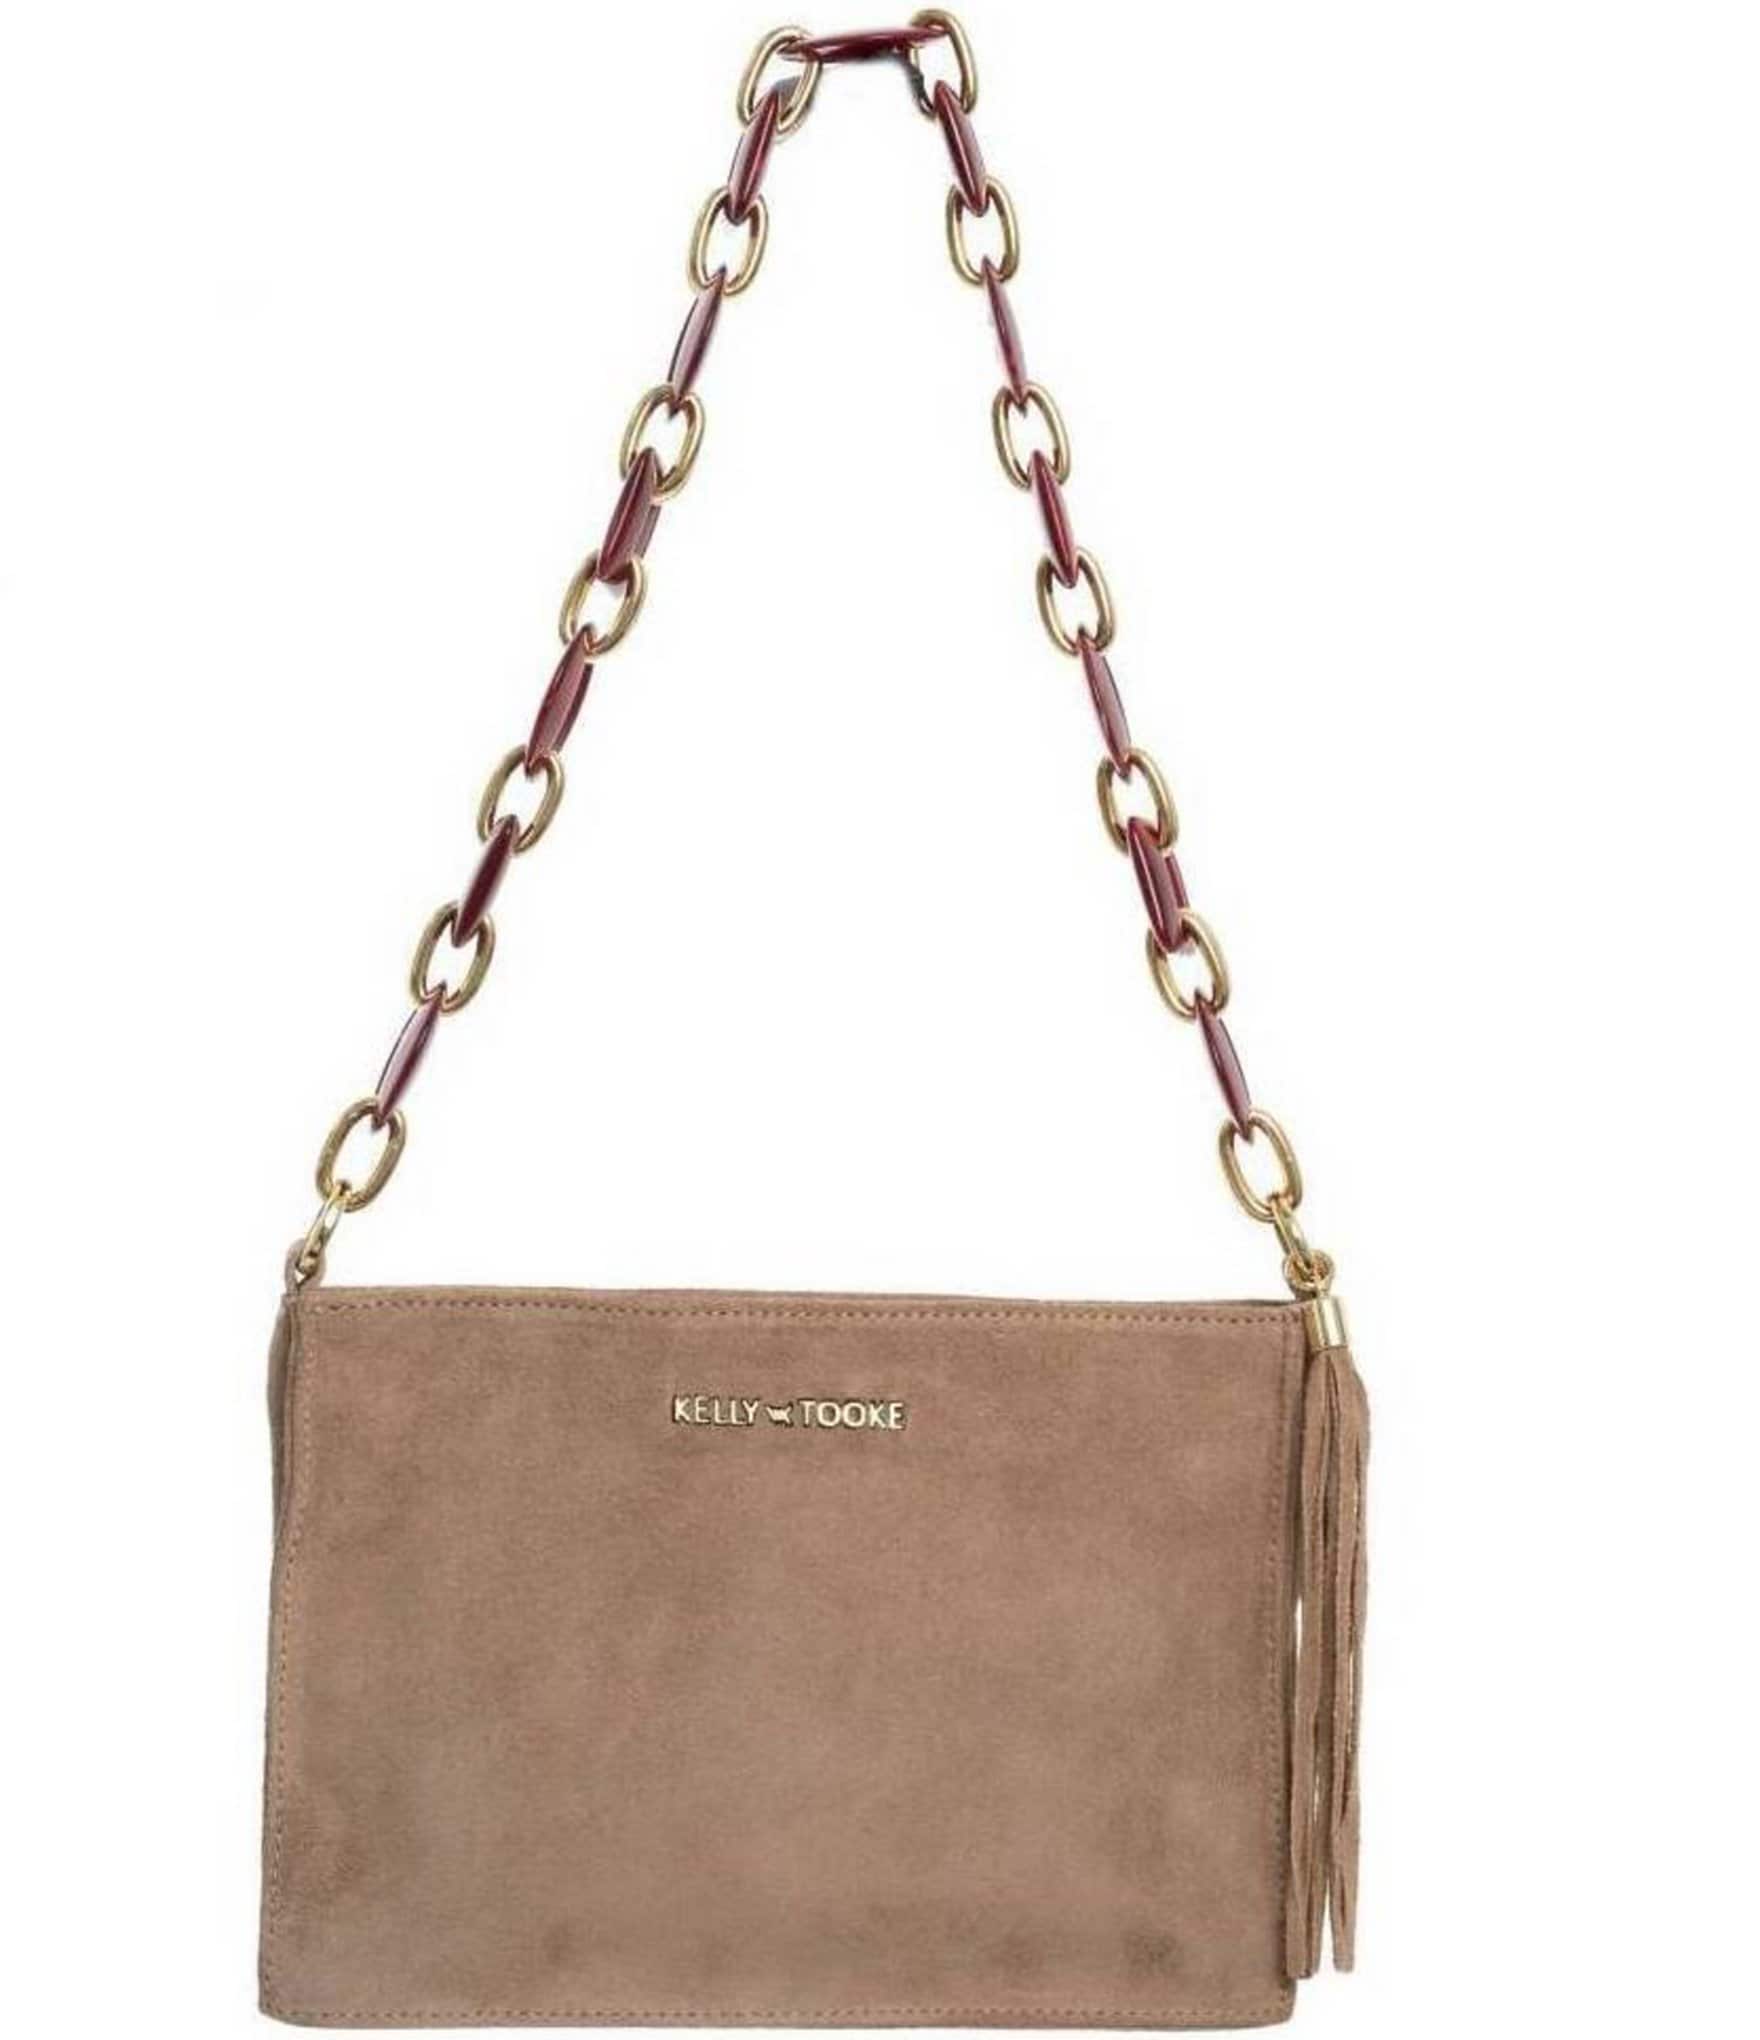 Kelley-Tooke Leather Berry Chain Side Tassel Clutch Crossbody Bag ...